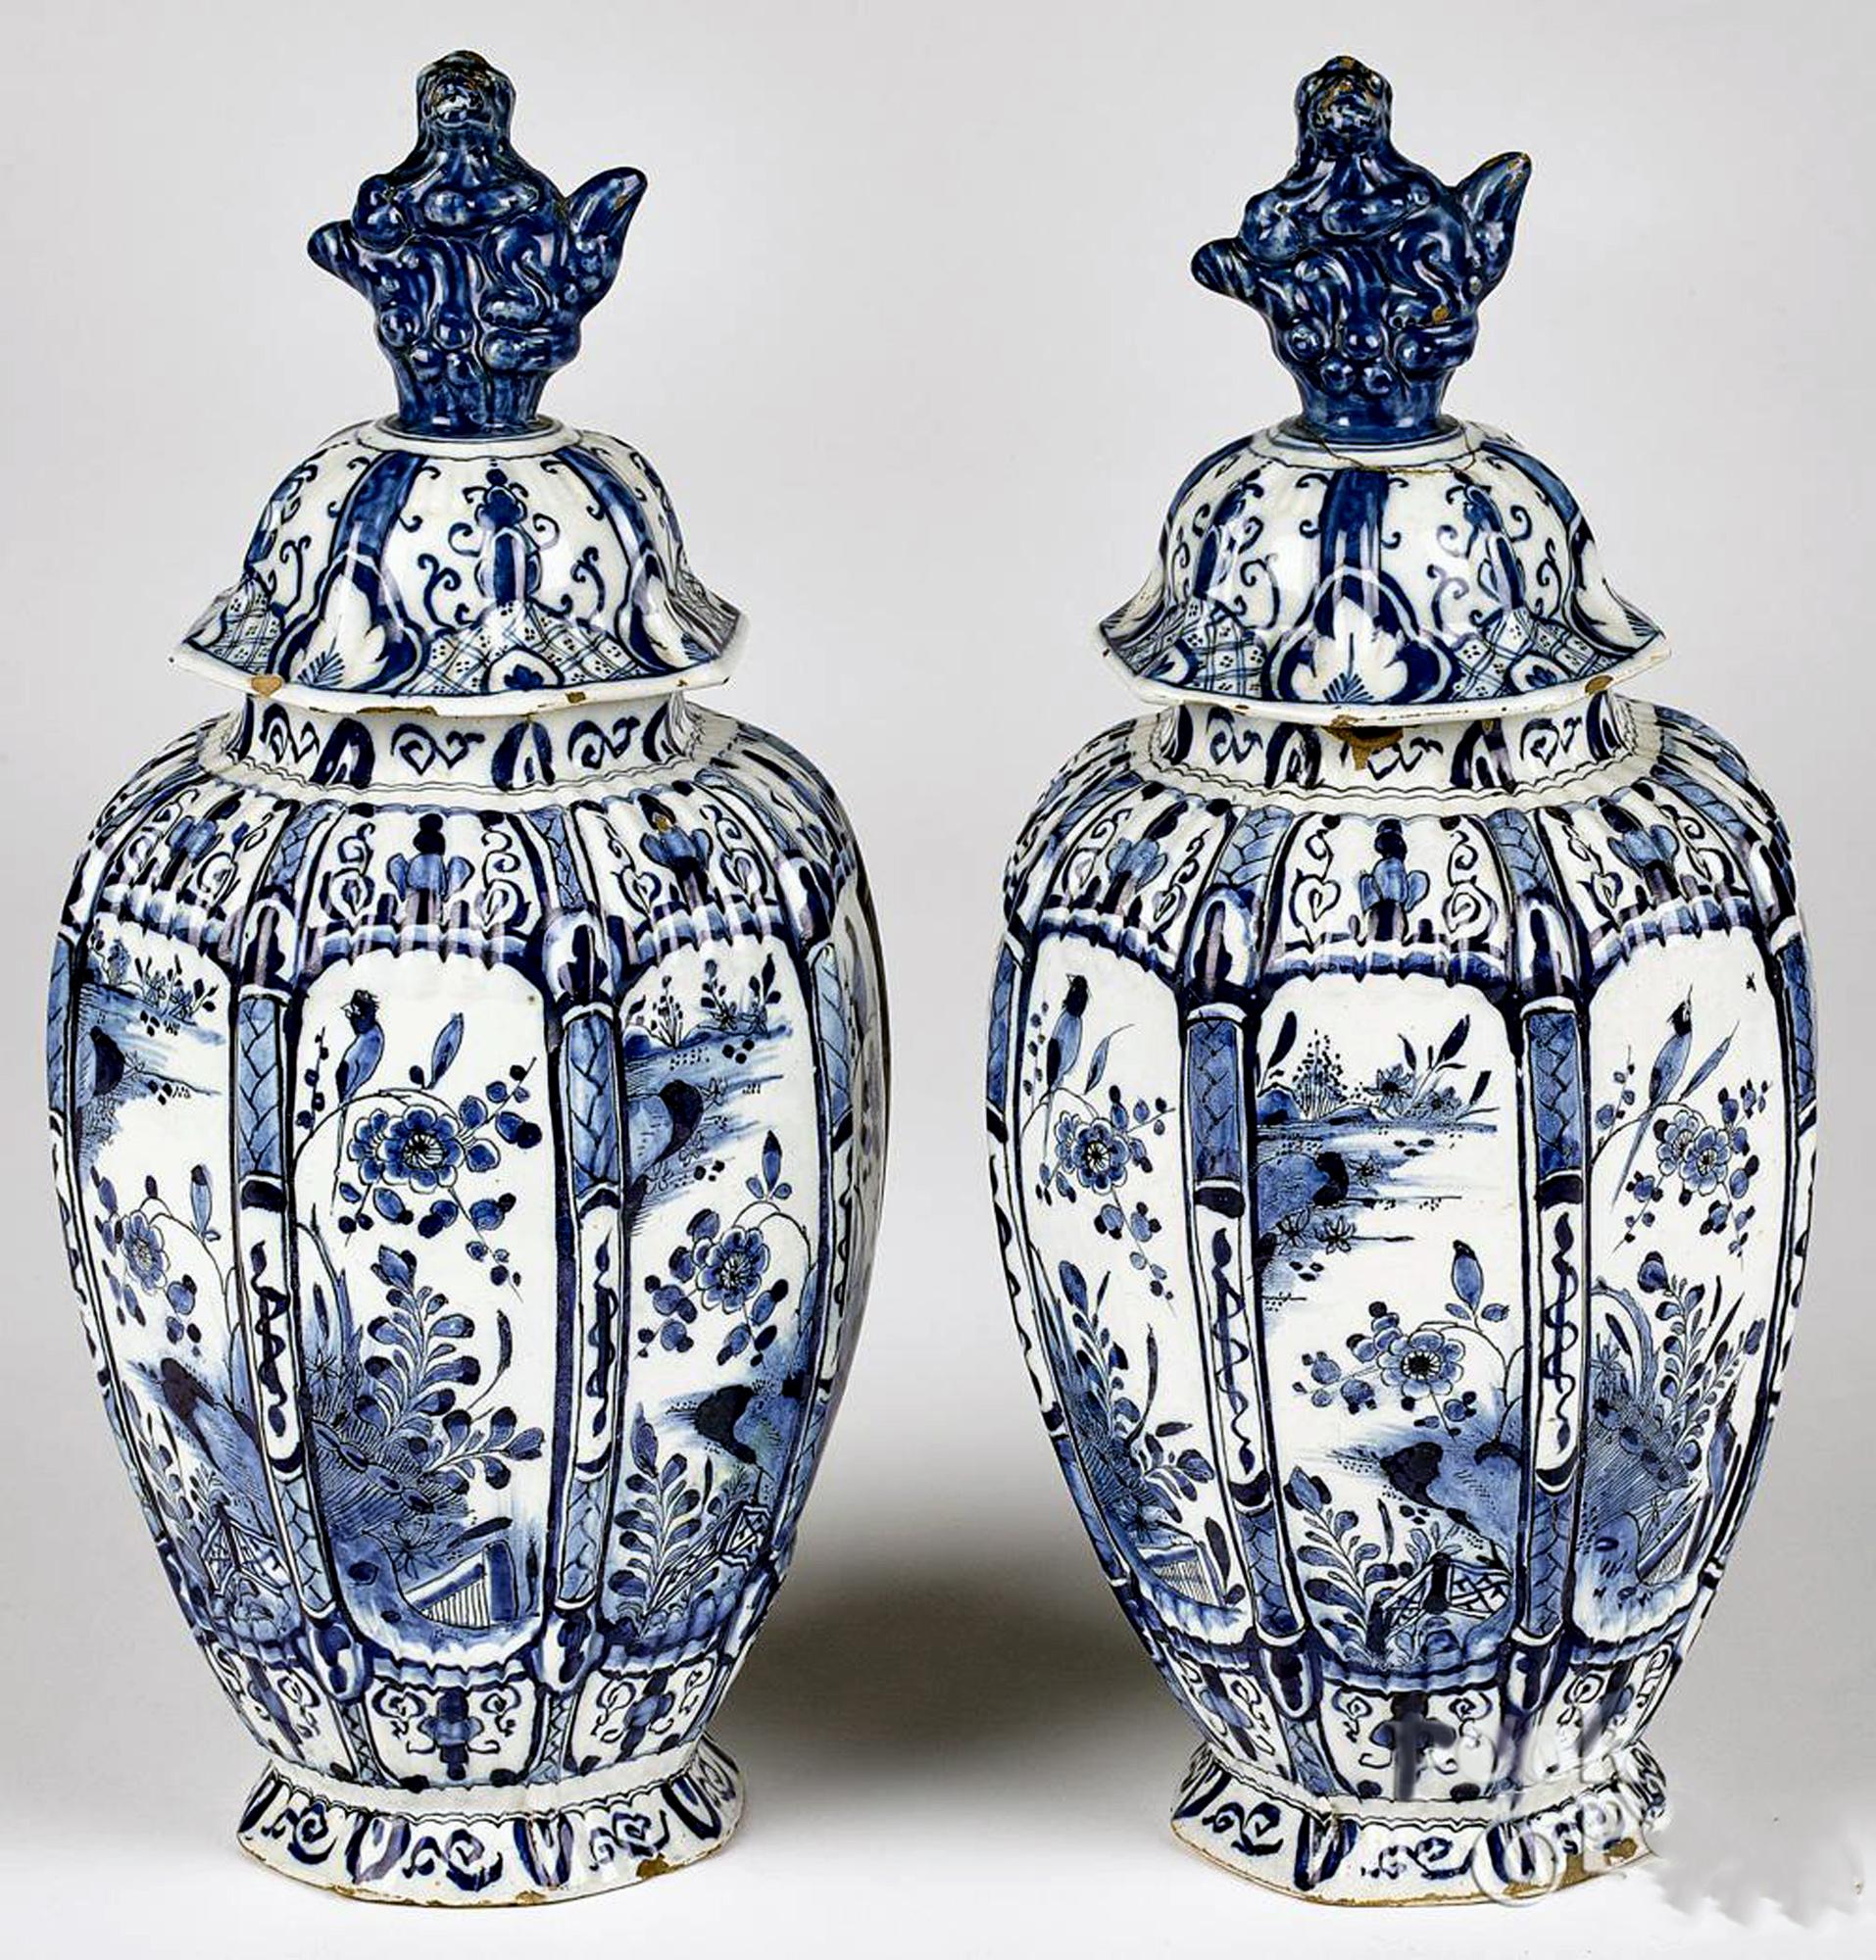 Vases et couvercles hollandais en bleu et blanc sous glaçure de Delft,
De Twee Scheepjes Factory (Les deux petits navires),
Milieu du 18e siècle

La paire de vases octogonaux et le couvercle sont peints en bleu et blanc sous glaçure avec des scènes